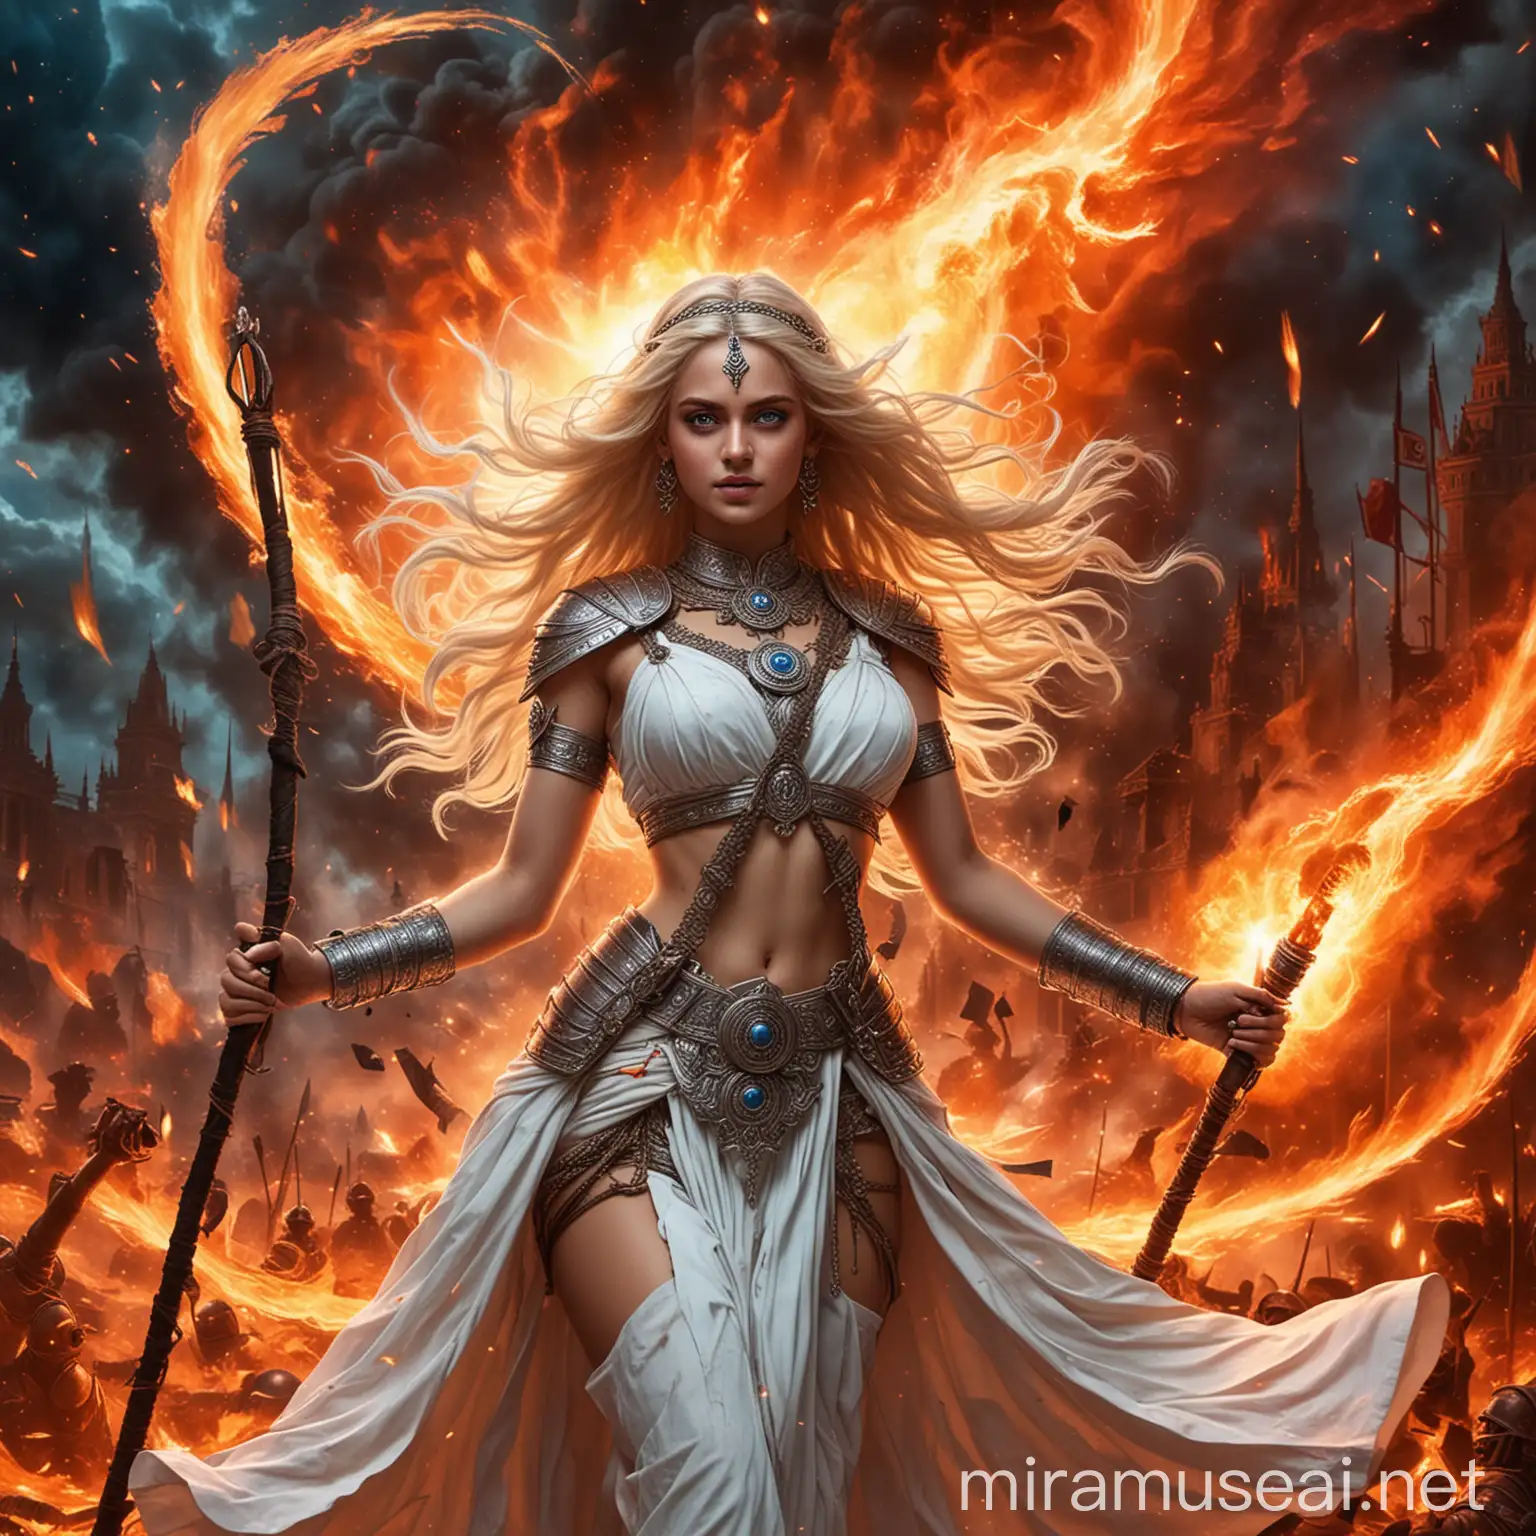 Blonde Hindu Goddess Empress General Nazi in Fiery Combat